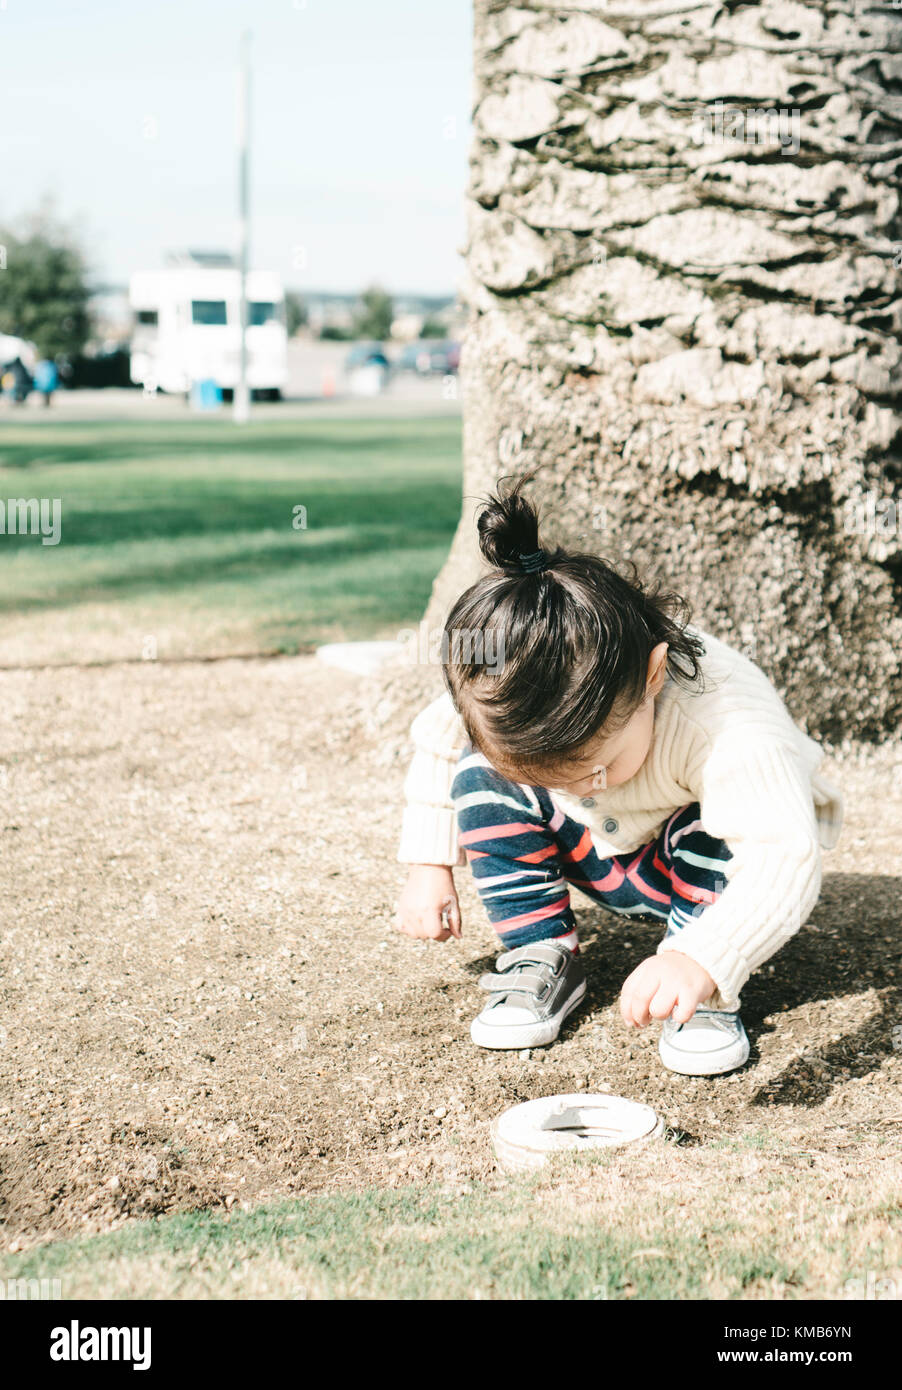 Kleinkind sammeln Gras in ein Abflussrohr Stockfoto